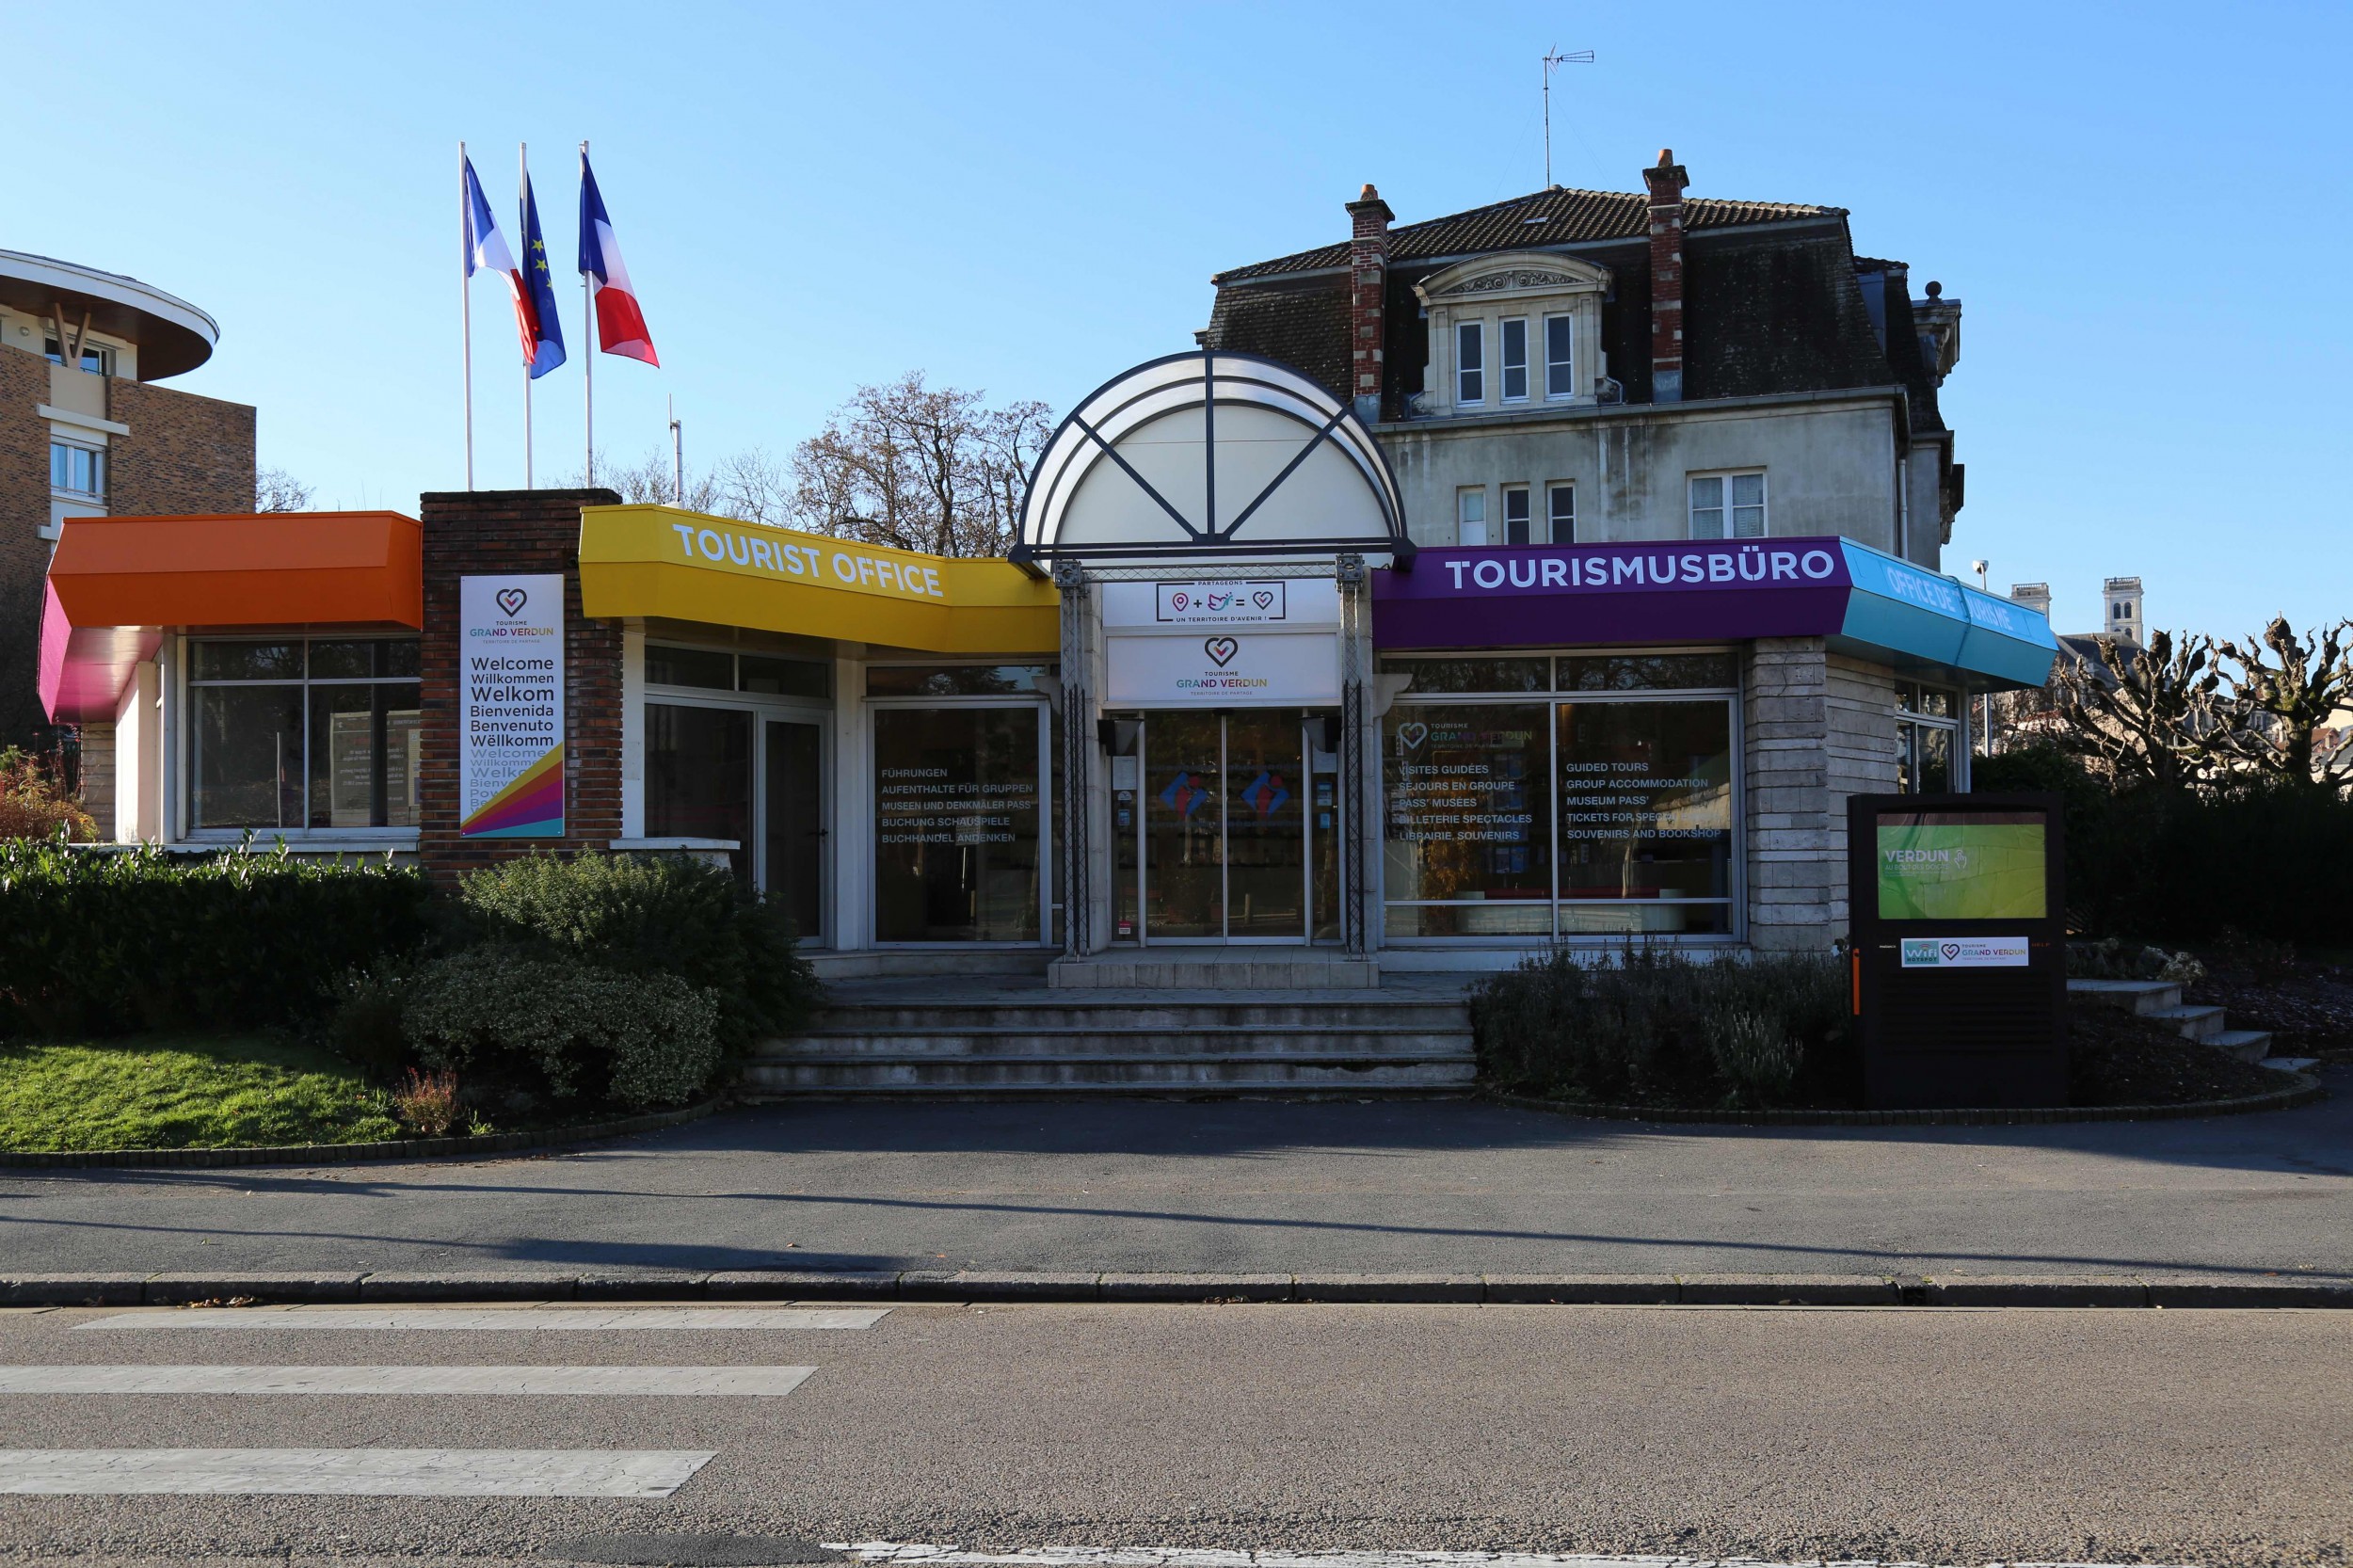 Office de Tourisme Grand Verdun